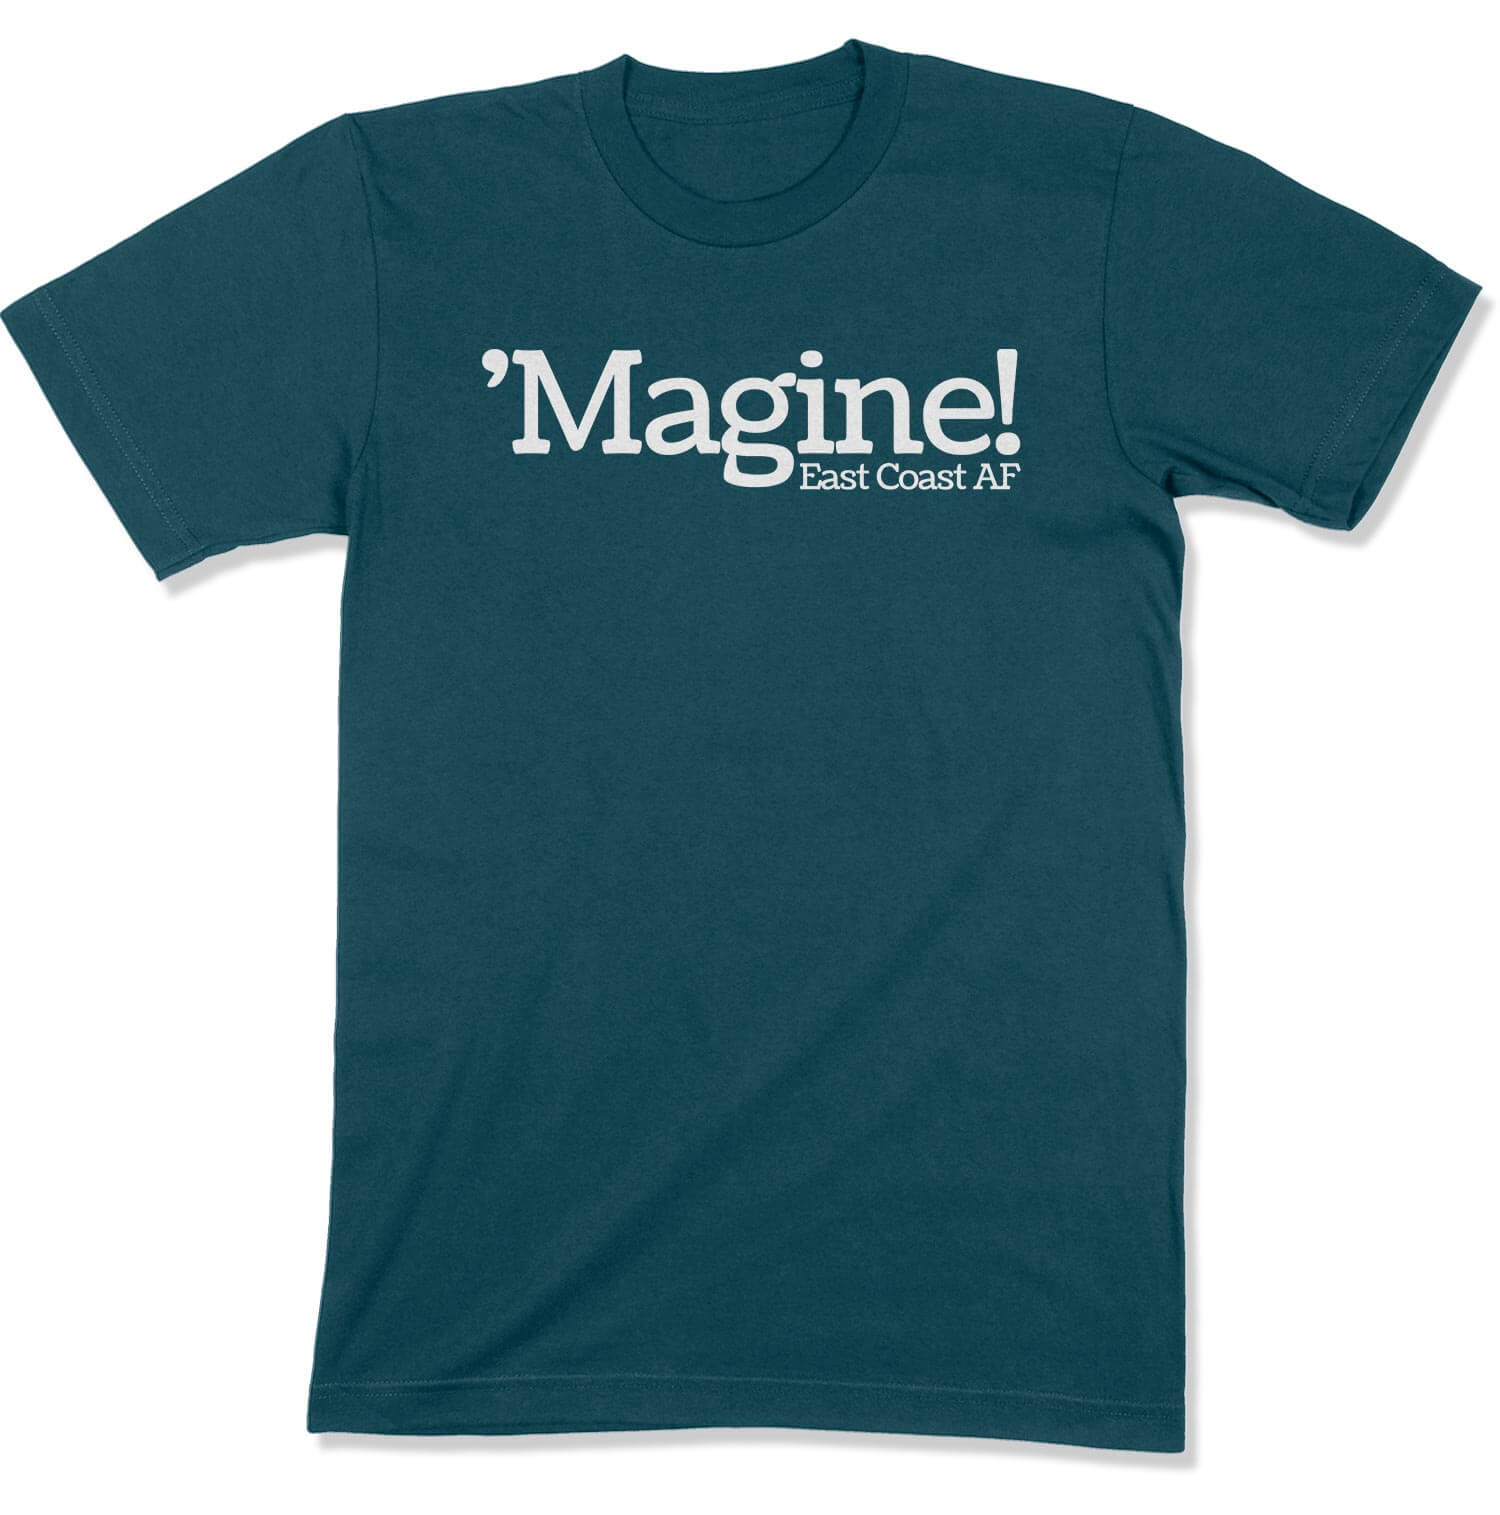 'Magine! Unisex T-Shirt in Color: Deep Teal - East Coast AF Apparel